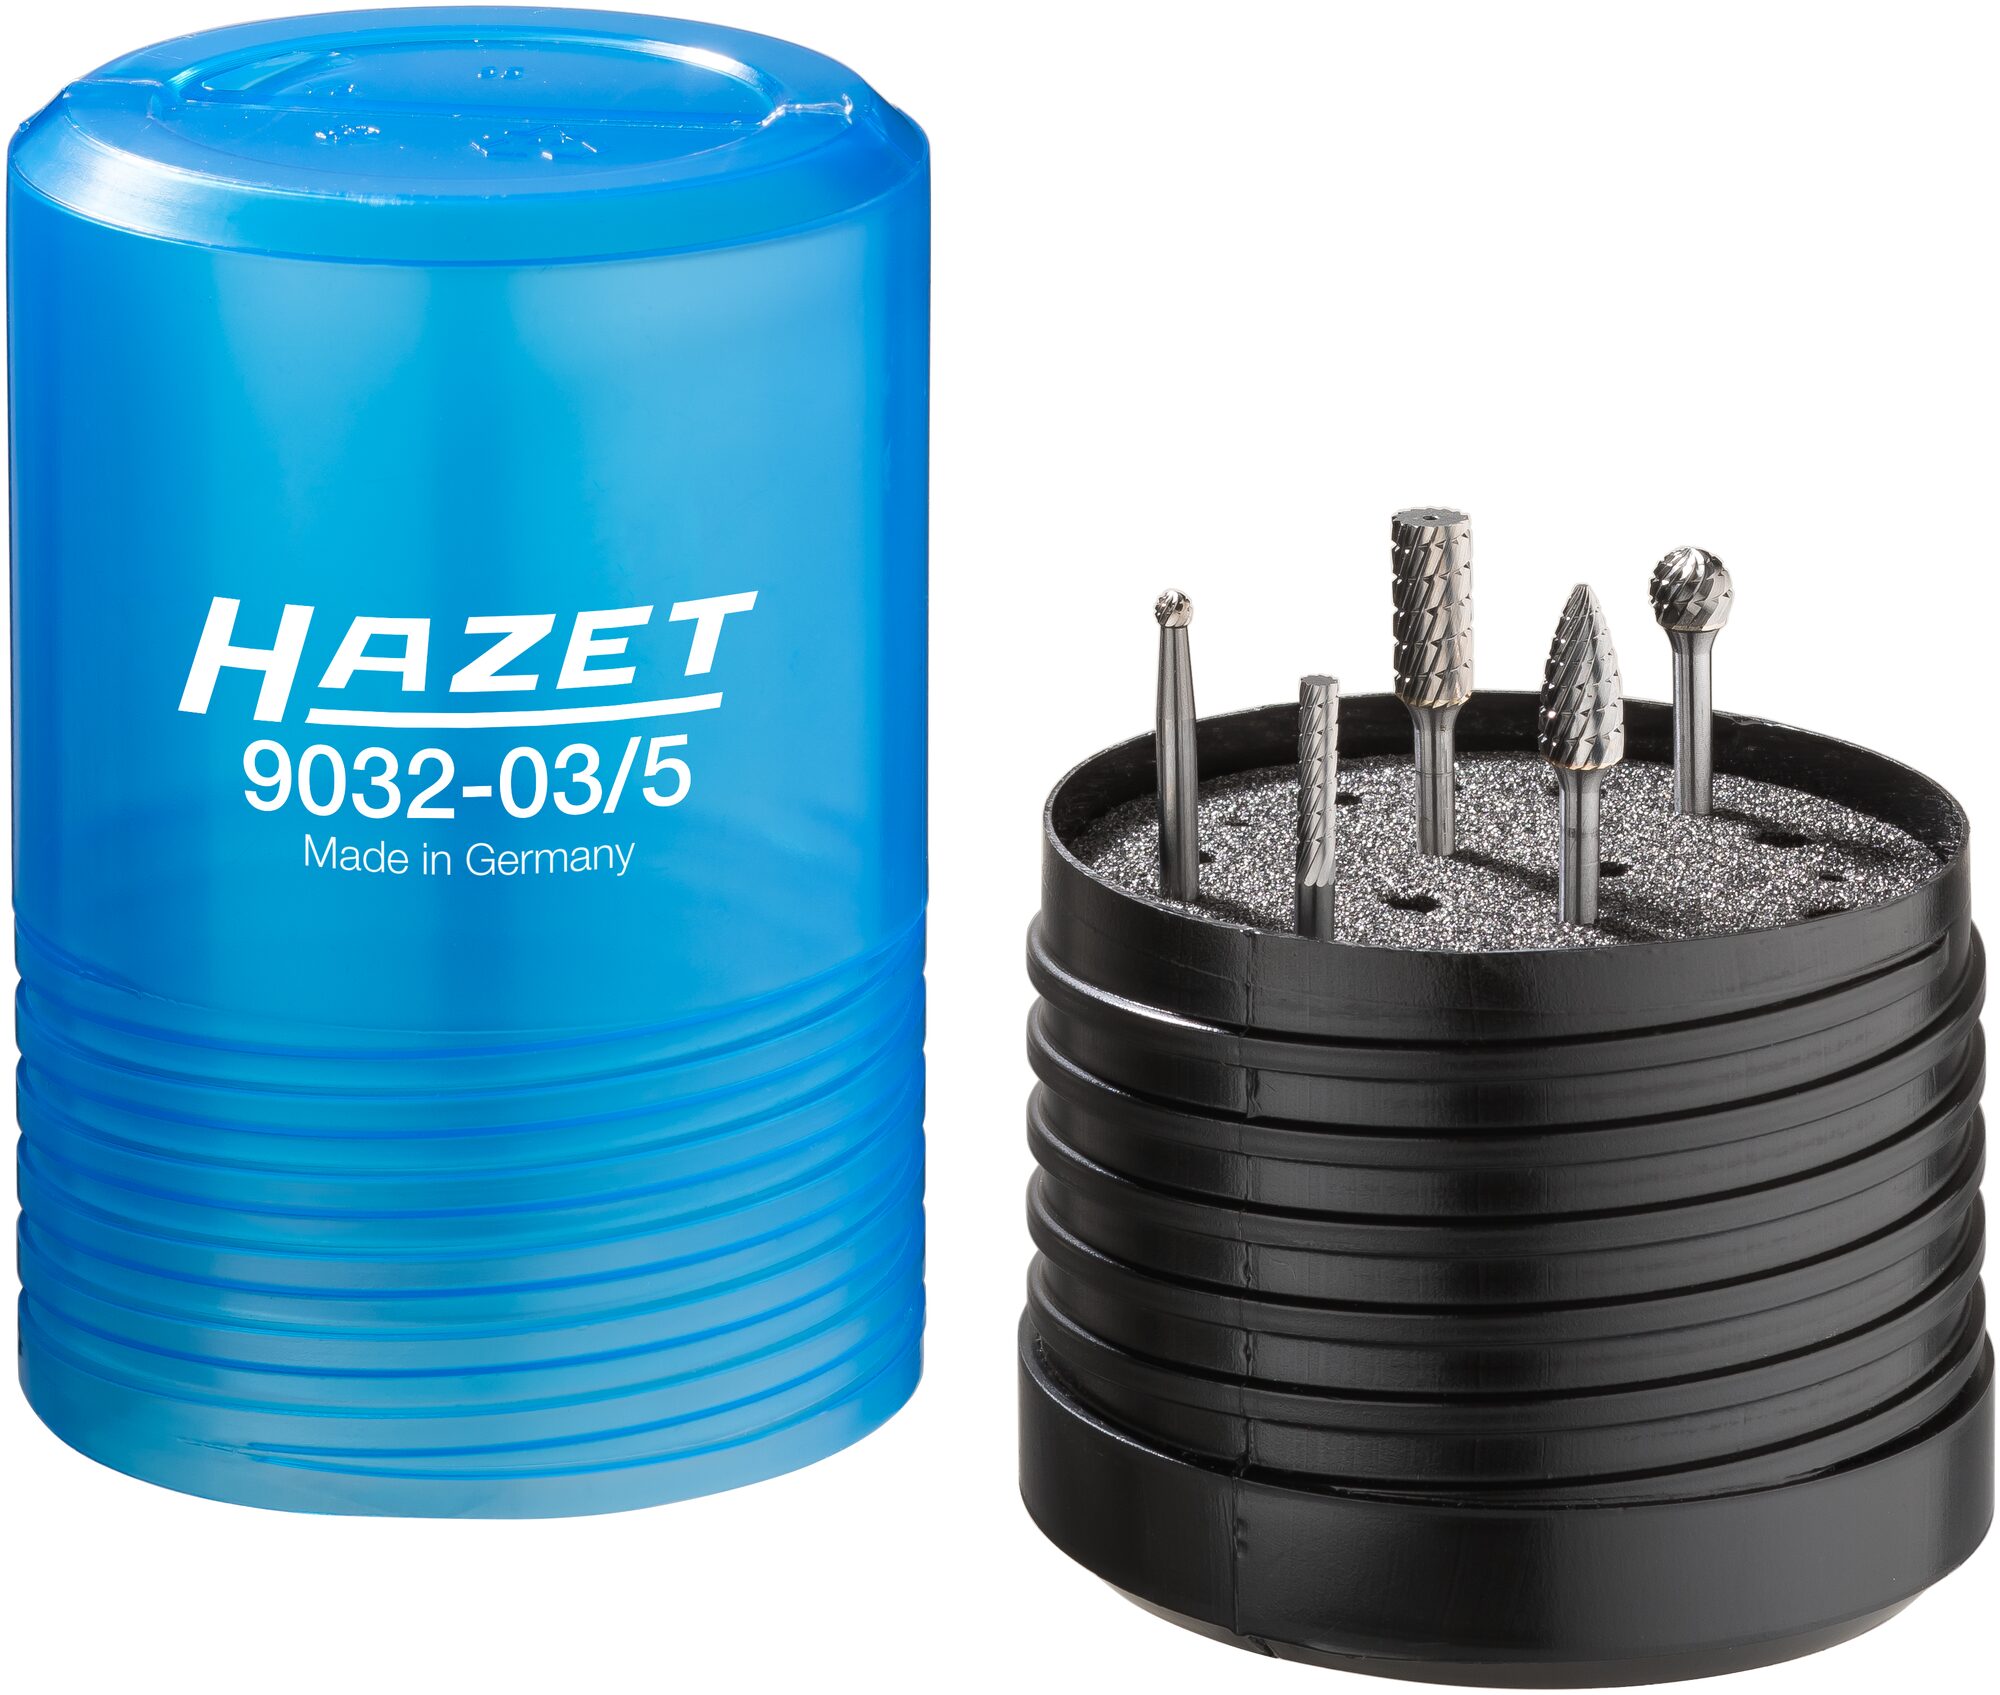 HAZET Hartmetall Frässtift Satz · 3 mm 9032-03/5 · Anzahl Werkzeuge: 5